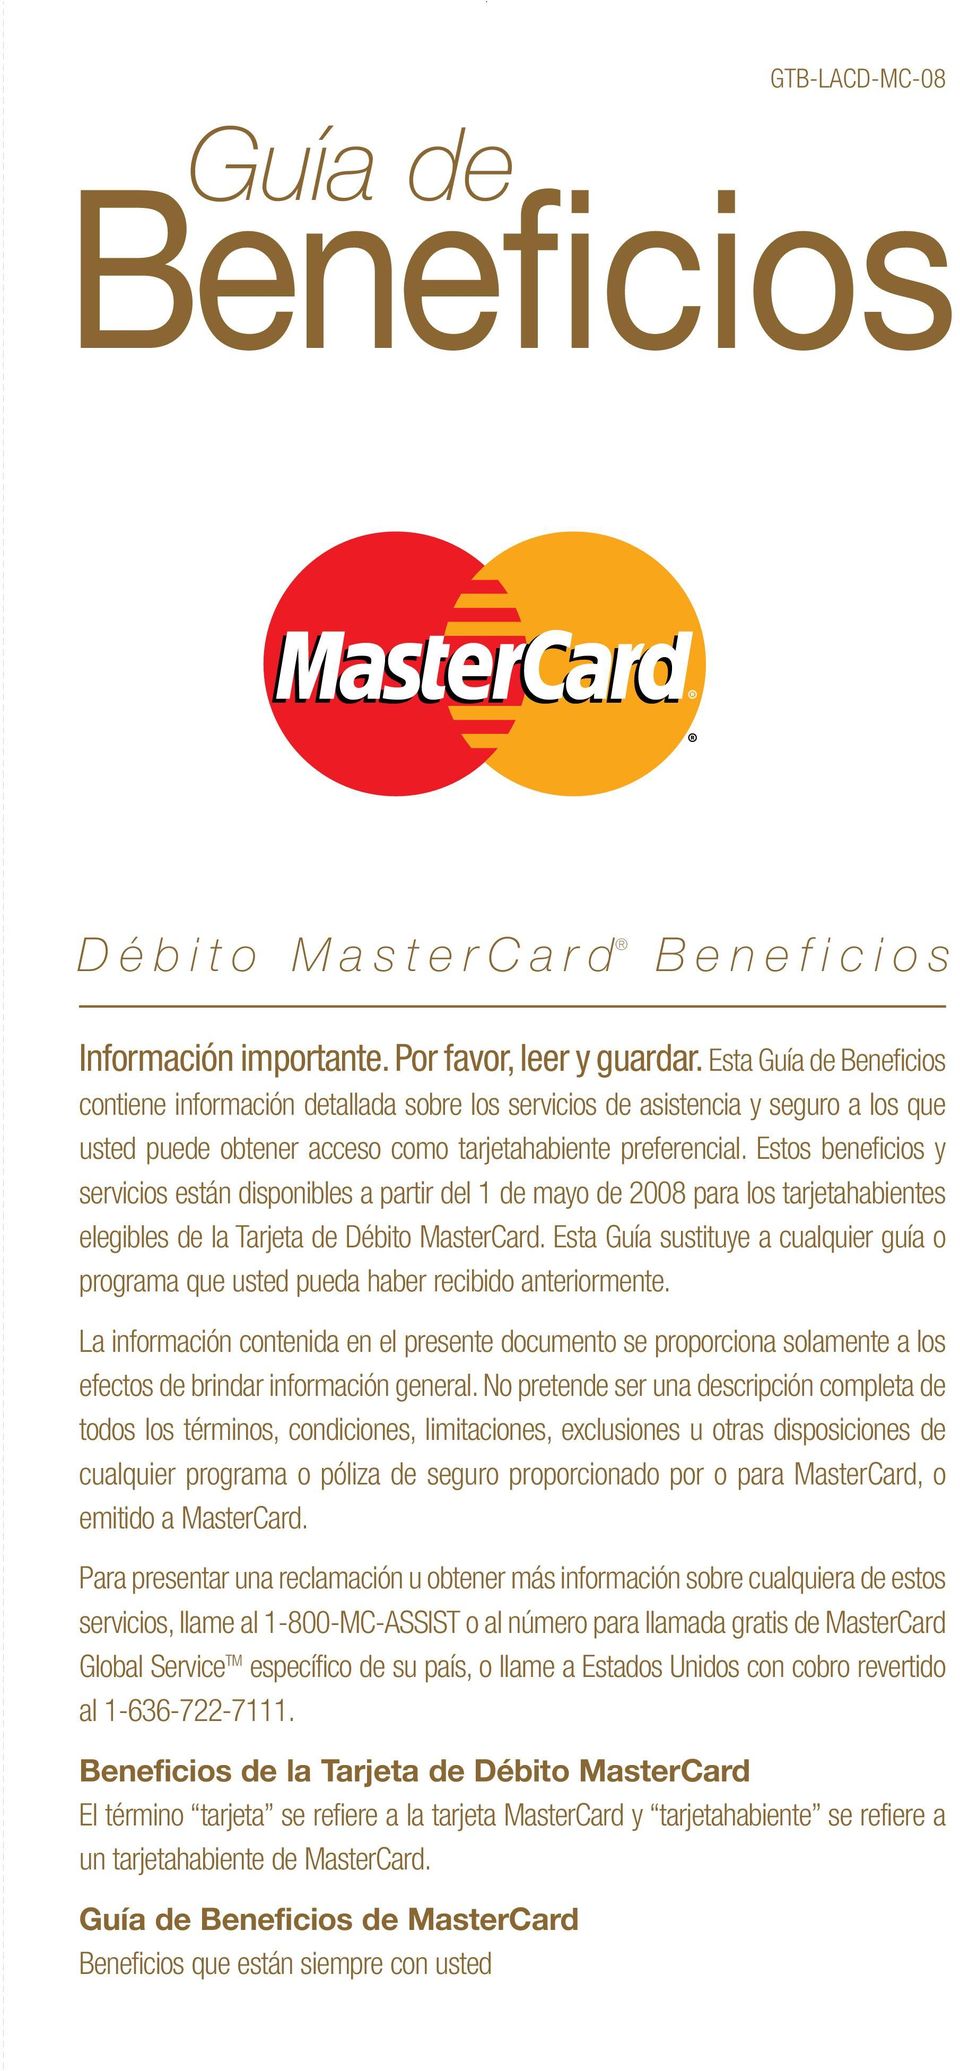 Estos beneficios y servicios están disponibles a partir del 1 de mayo de 2008 para los tarjetahabientes elegibles de la Tarjeta de Débito MasterCard.